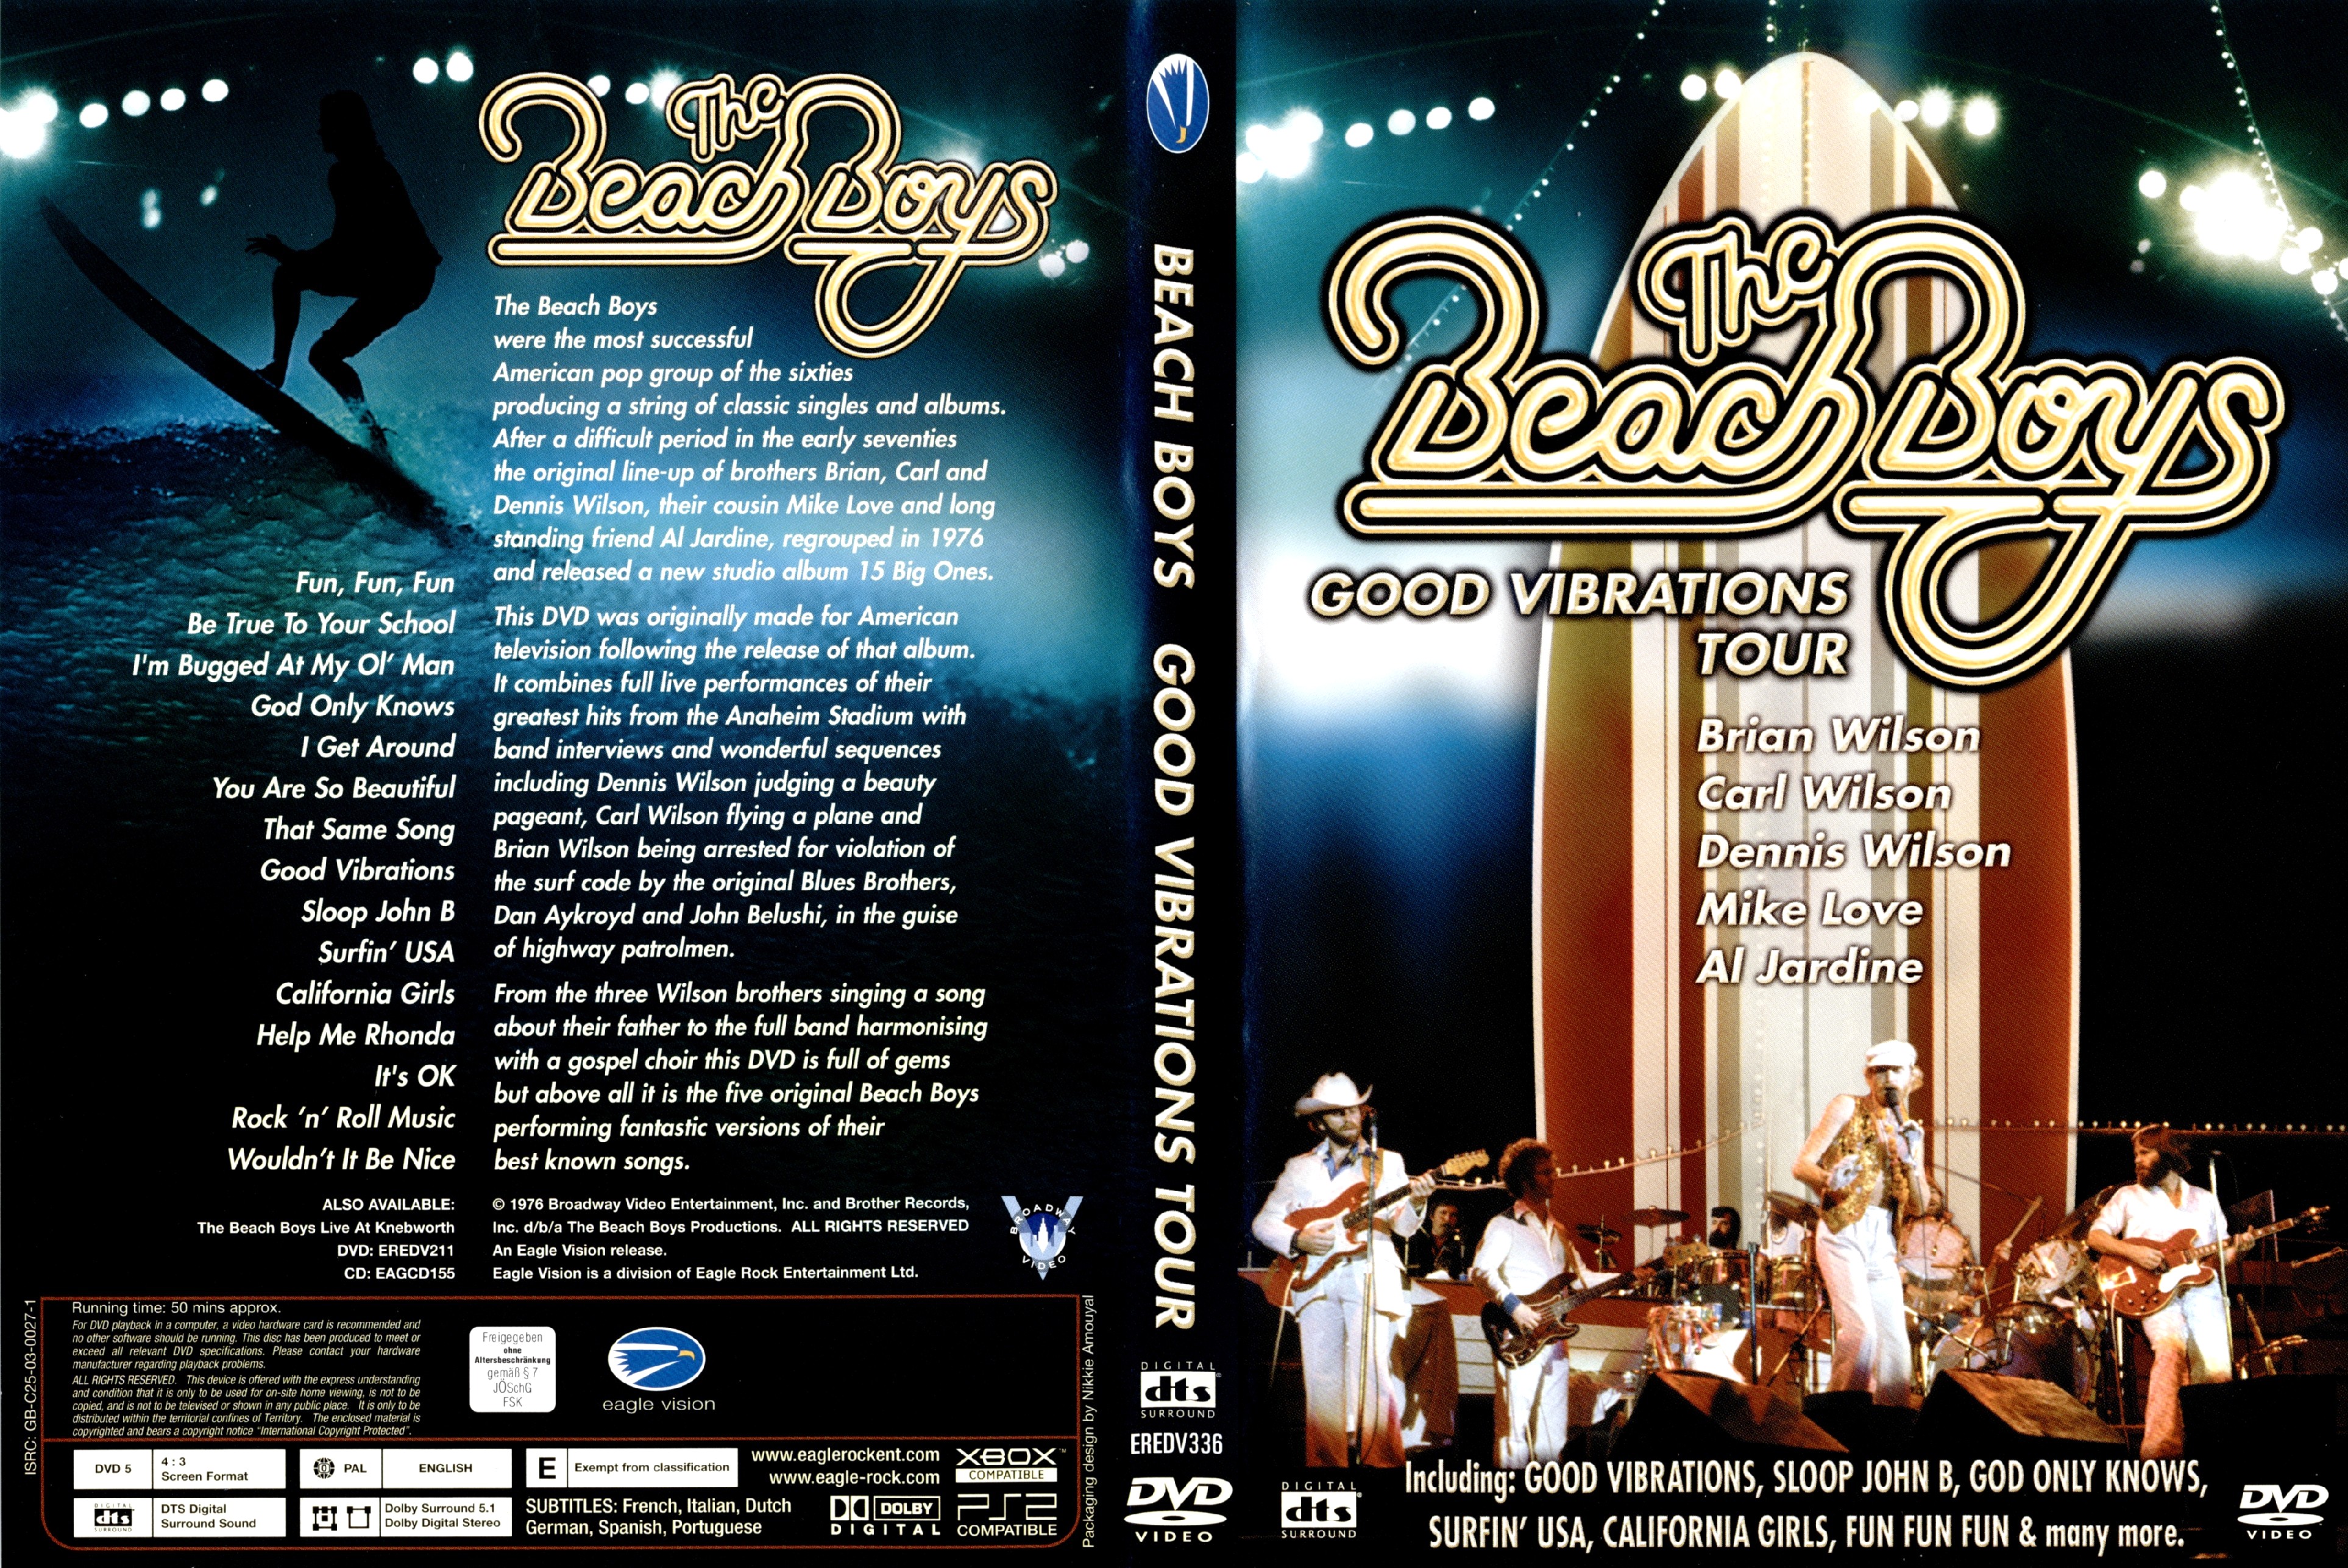 Jaquette DVD The beach boys - Good vibrations tour